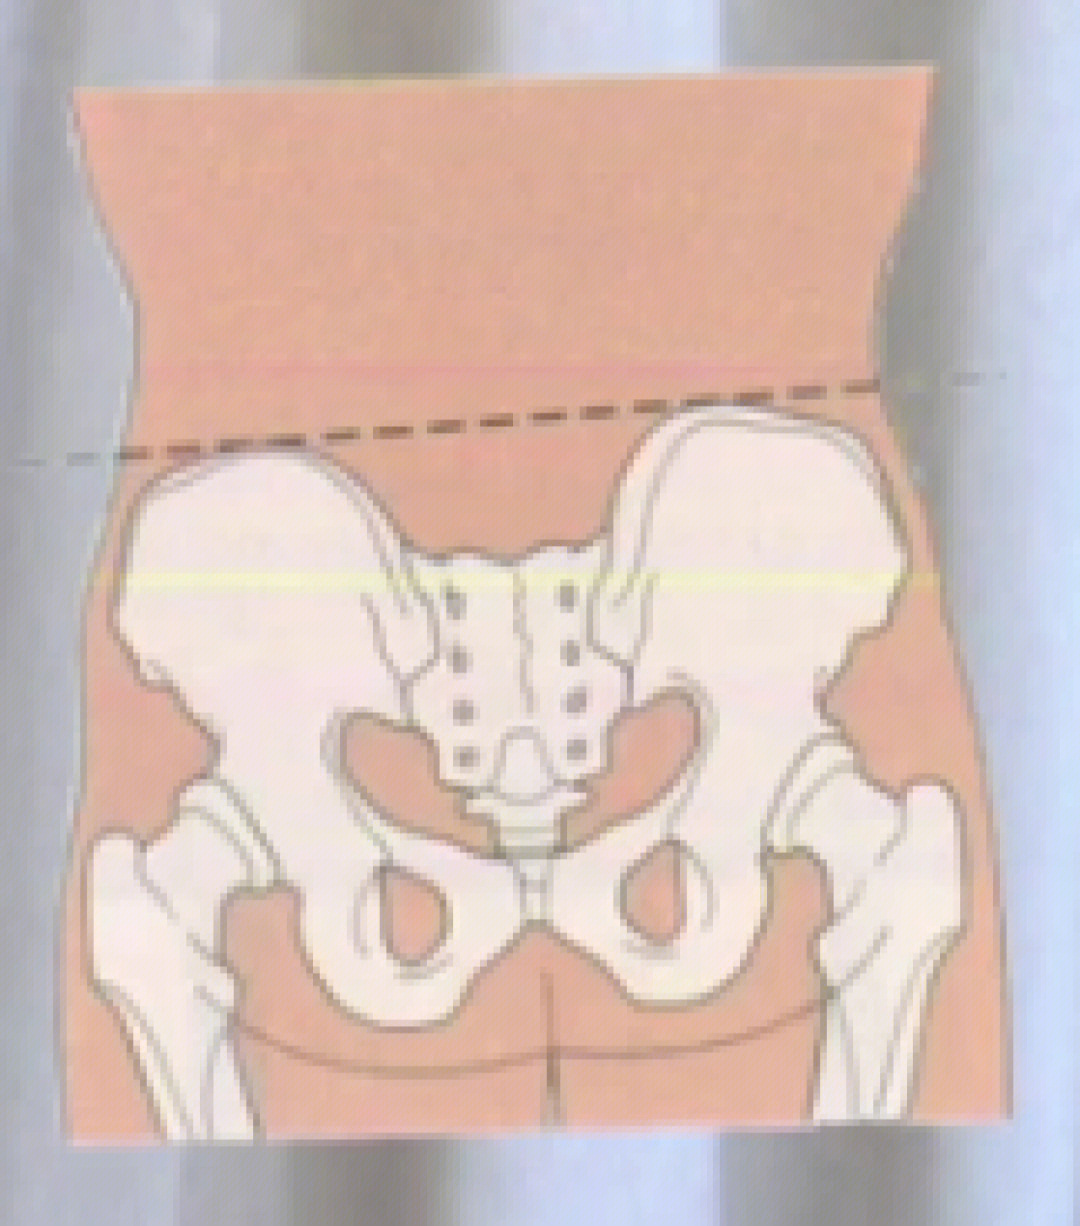 骨盆矢状径图片